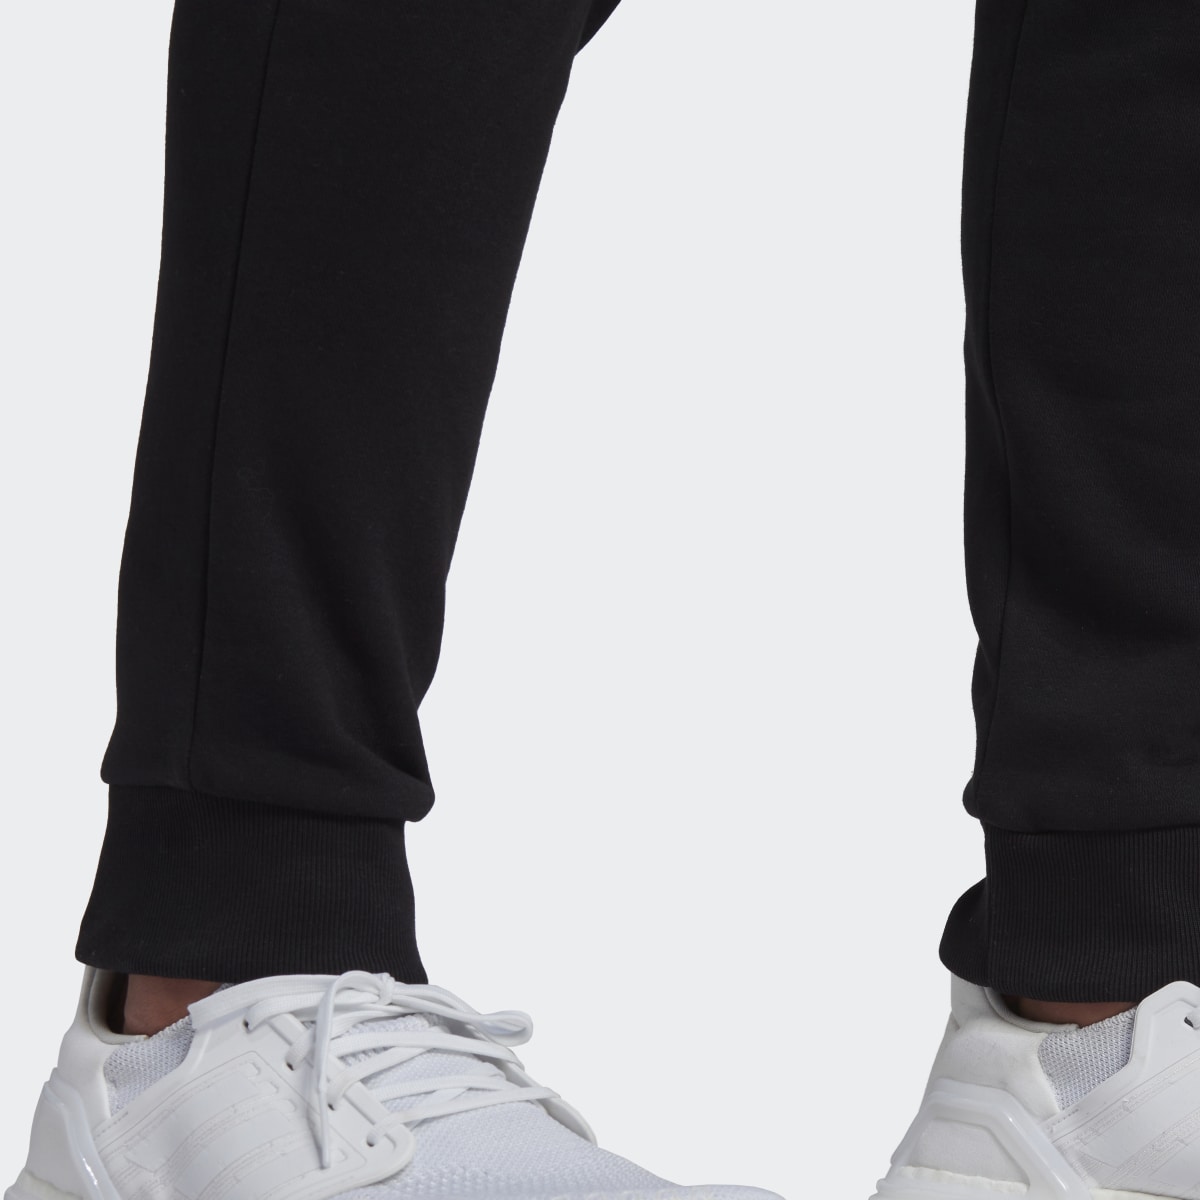 Adidas Fleece Woven Pants. 6